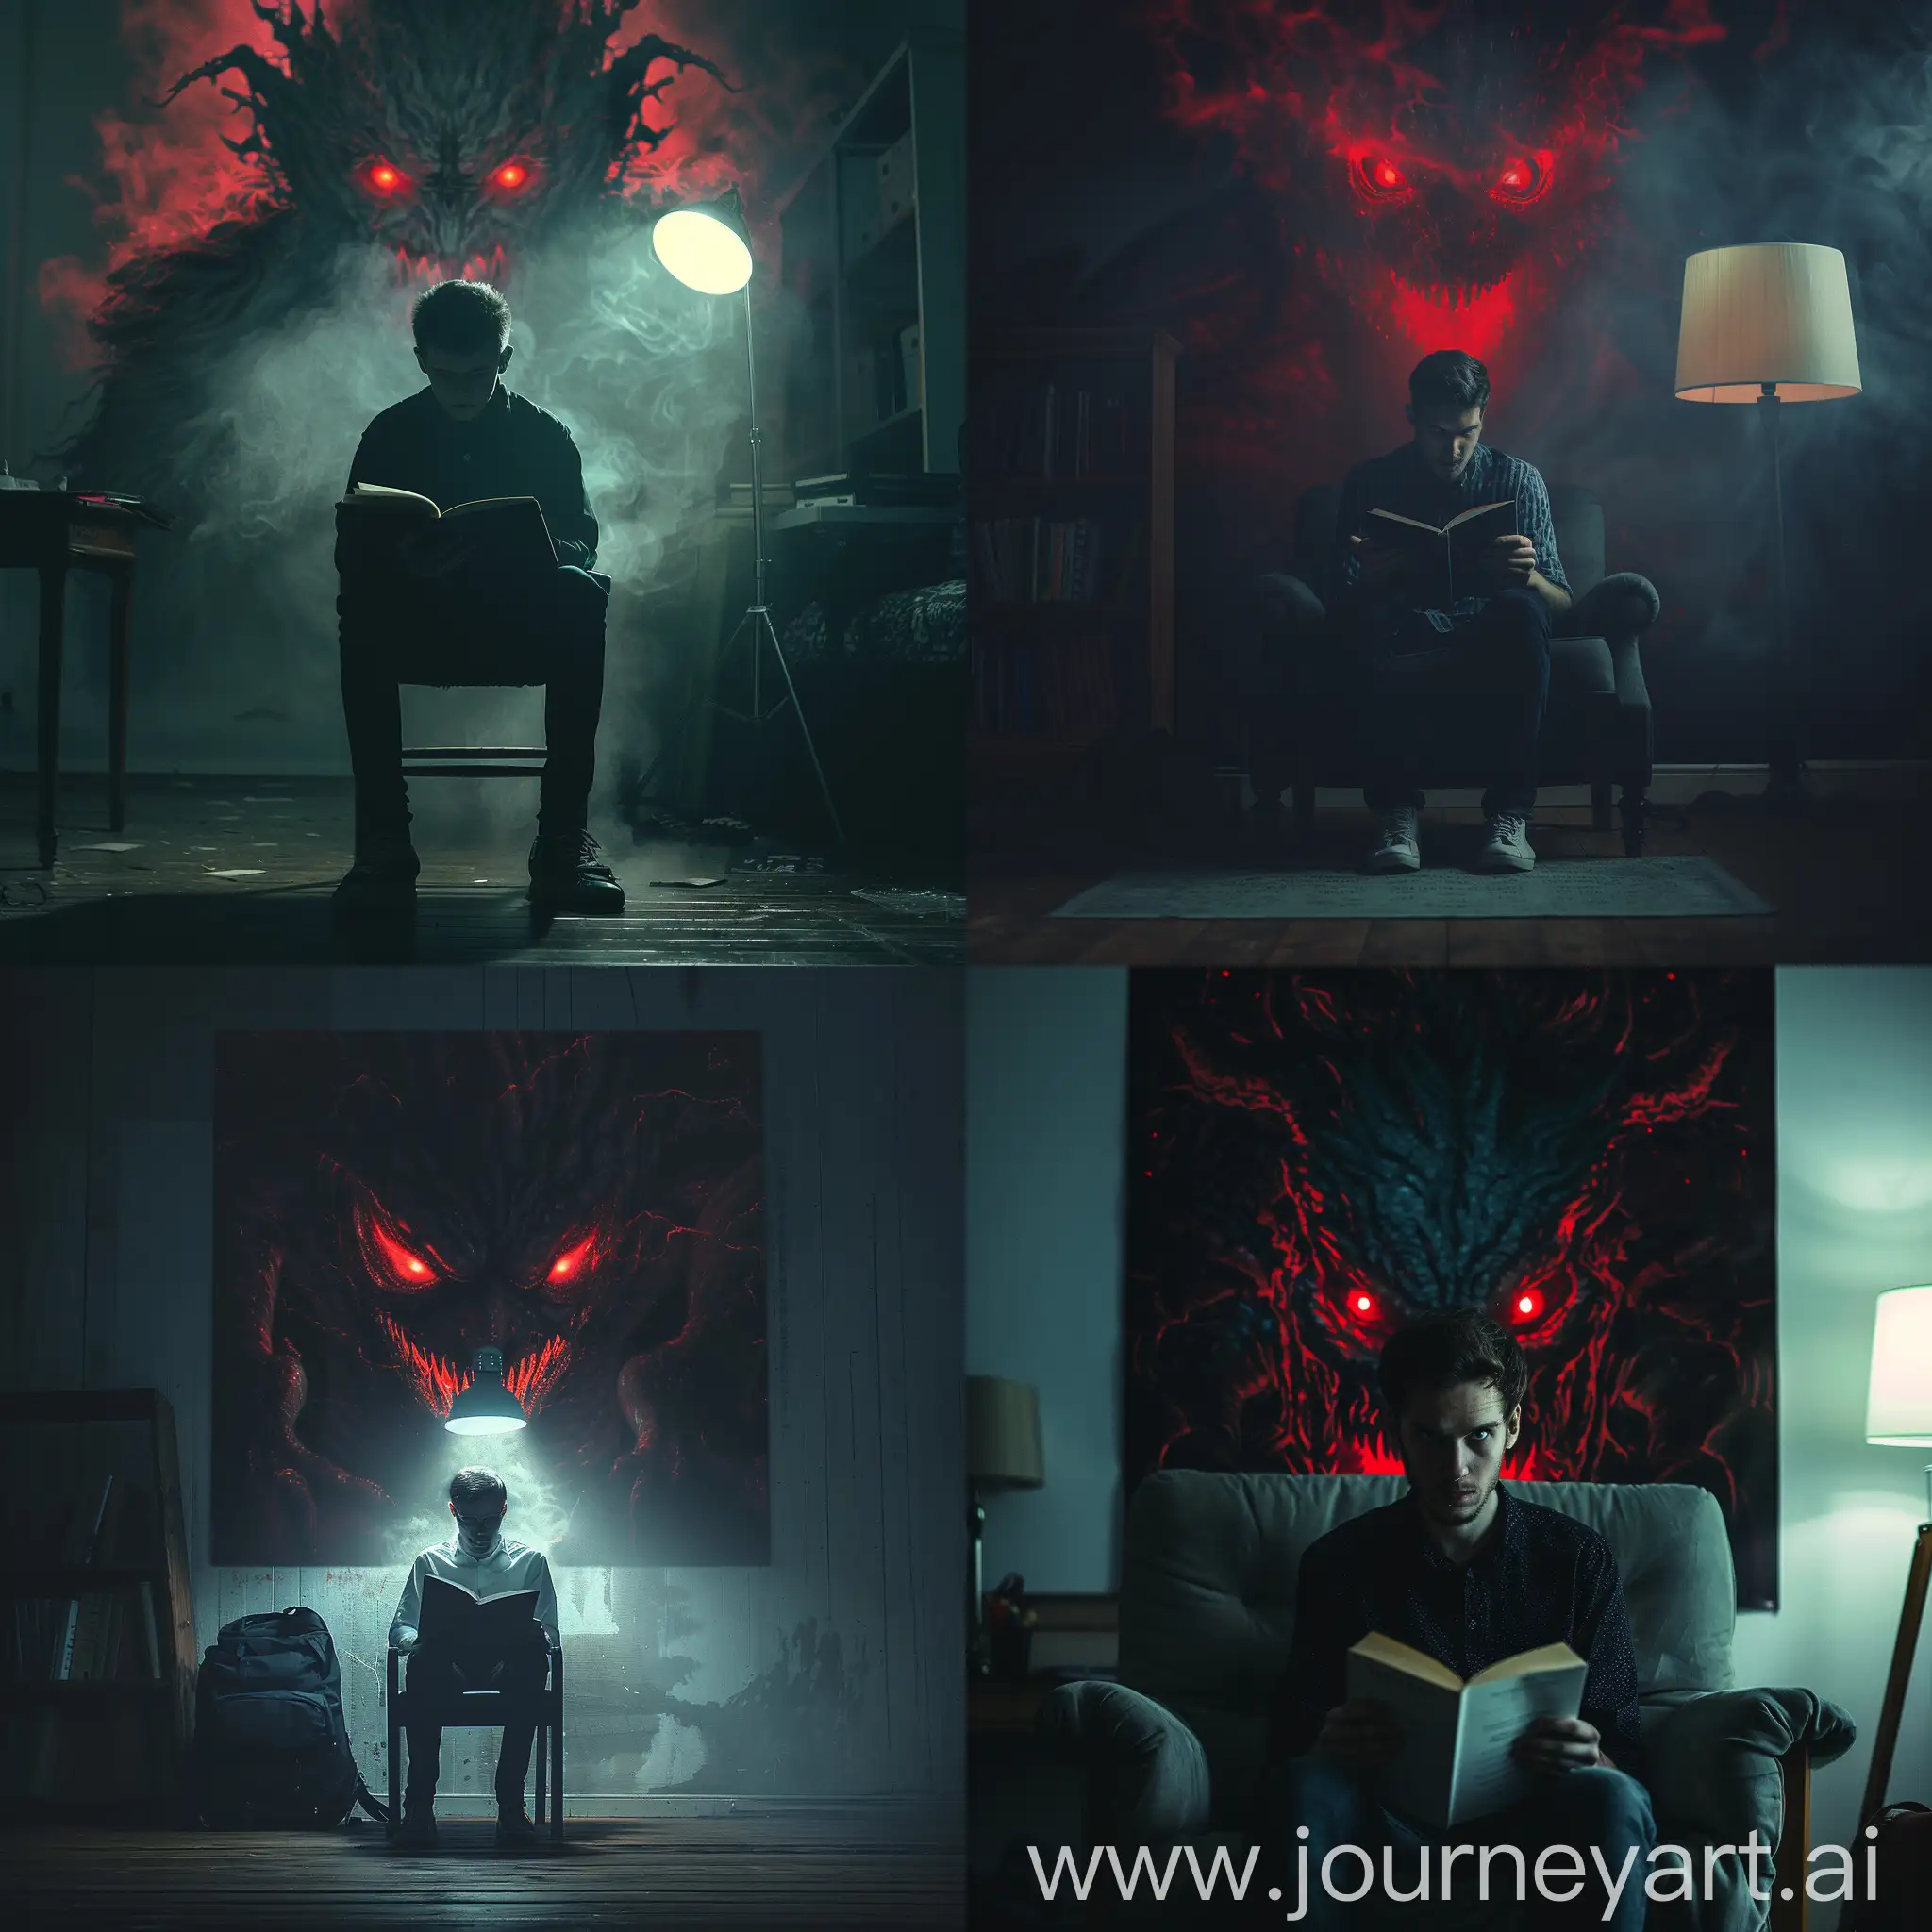 мужчина студент сидит на стуле в темном помещении с книжкой в руках, задний фон страшное чудище с красными глазами, реалистично, белая лампа, HDR, 8к, профессиональное освещение,, острый фокус, пустая комната